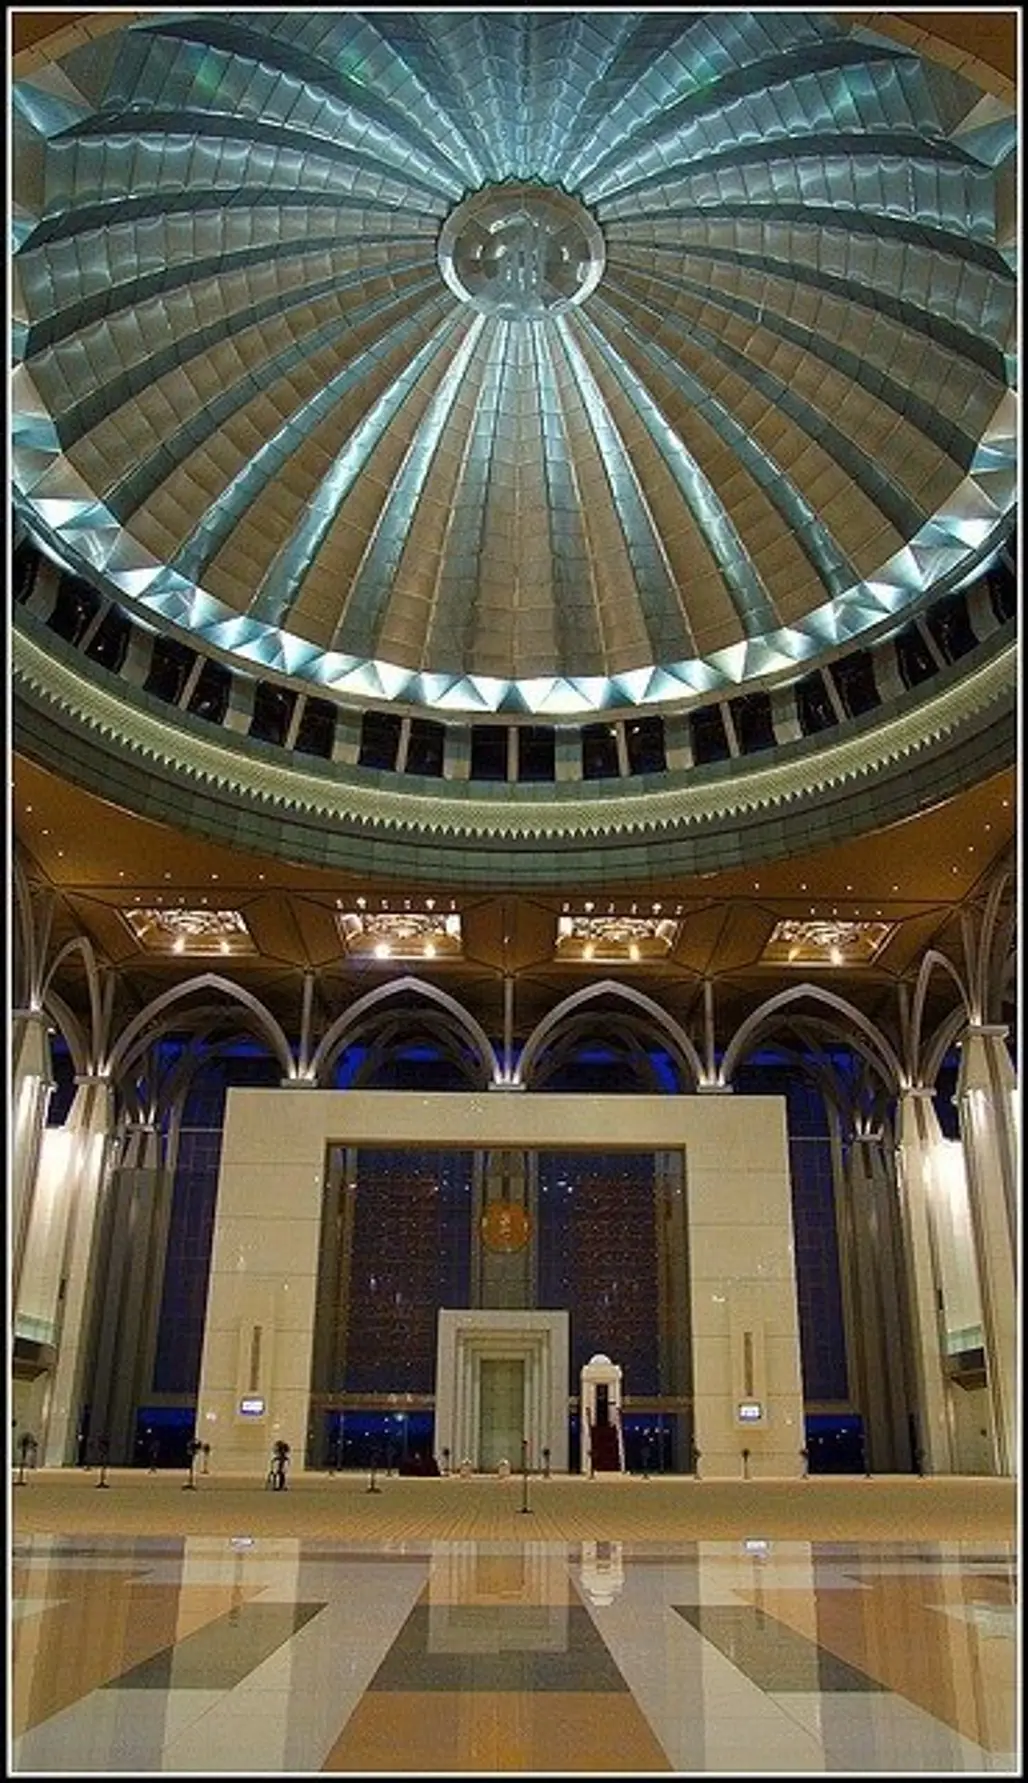 Tuanku Mizan Zainal Abidin Mosque, Putrajaya, Malaysia